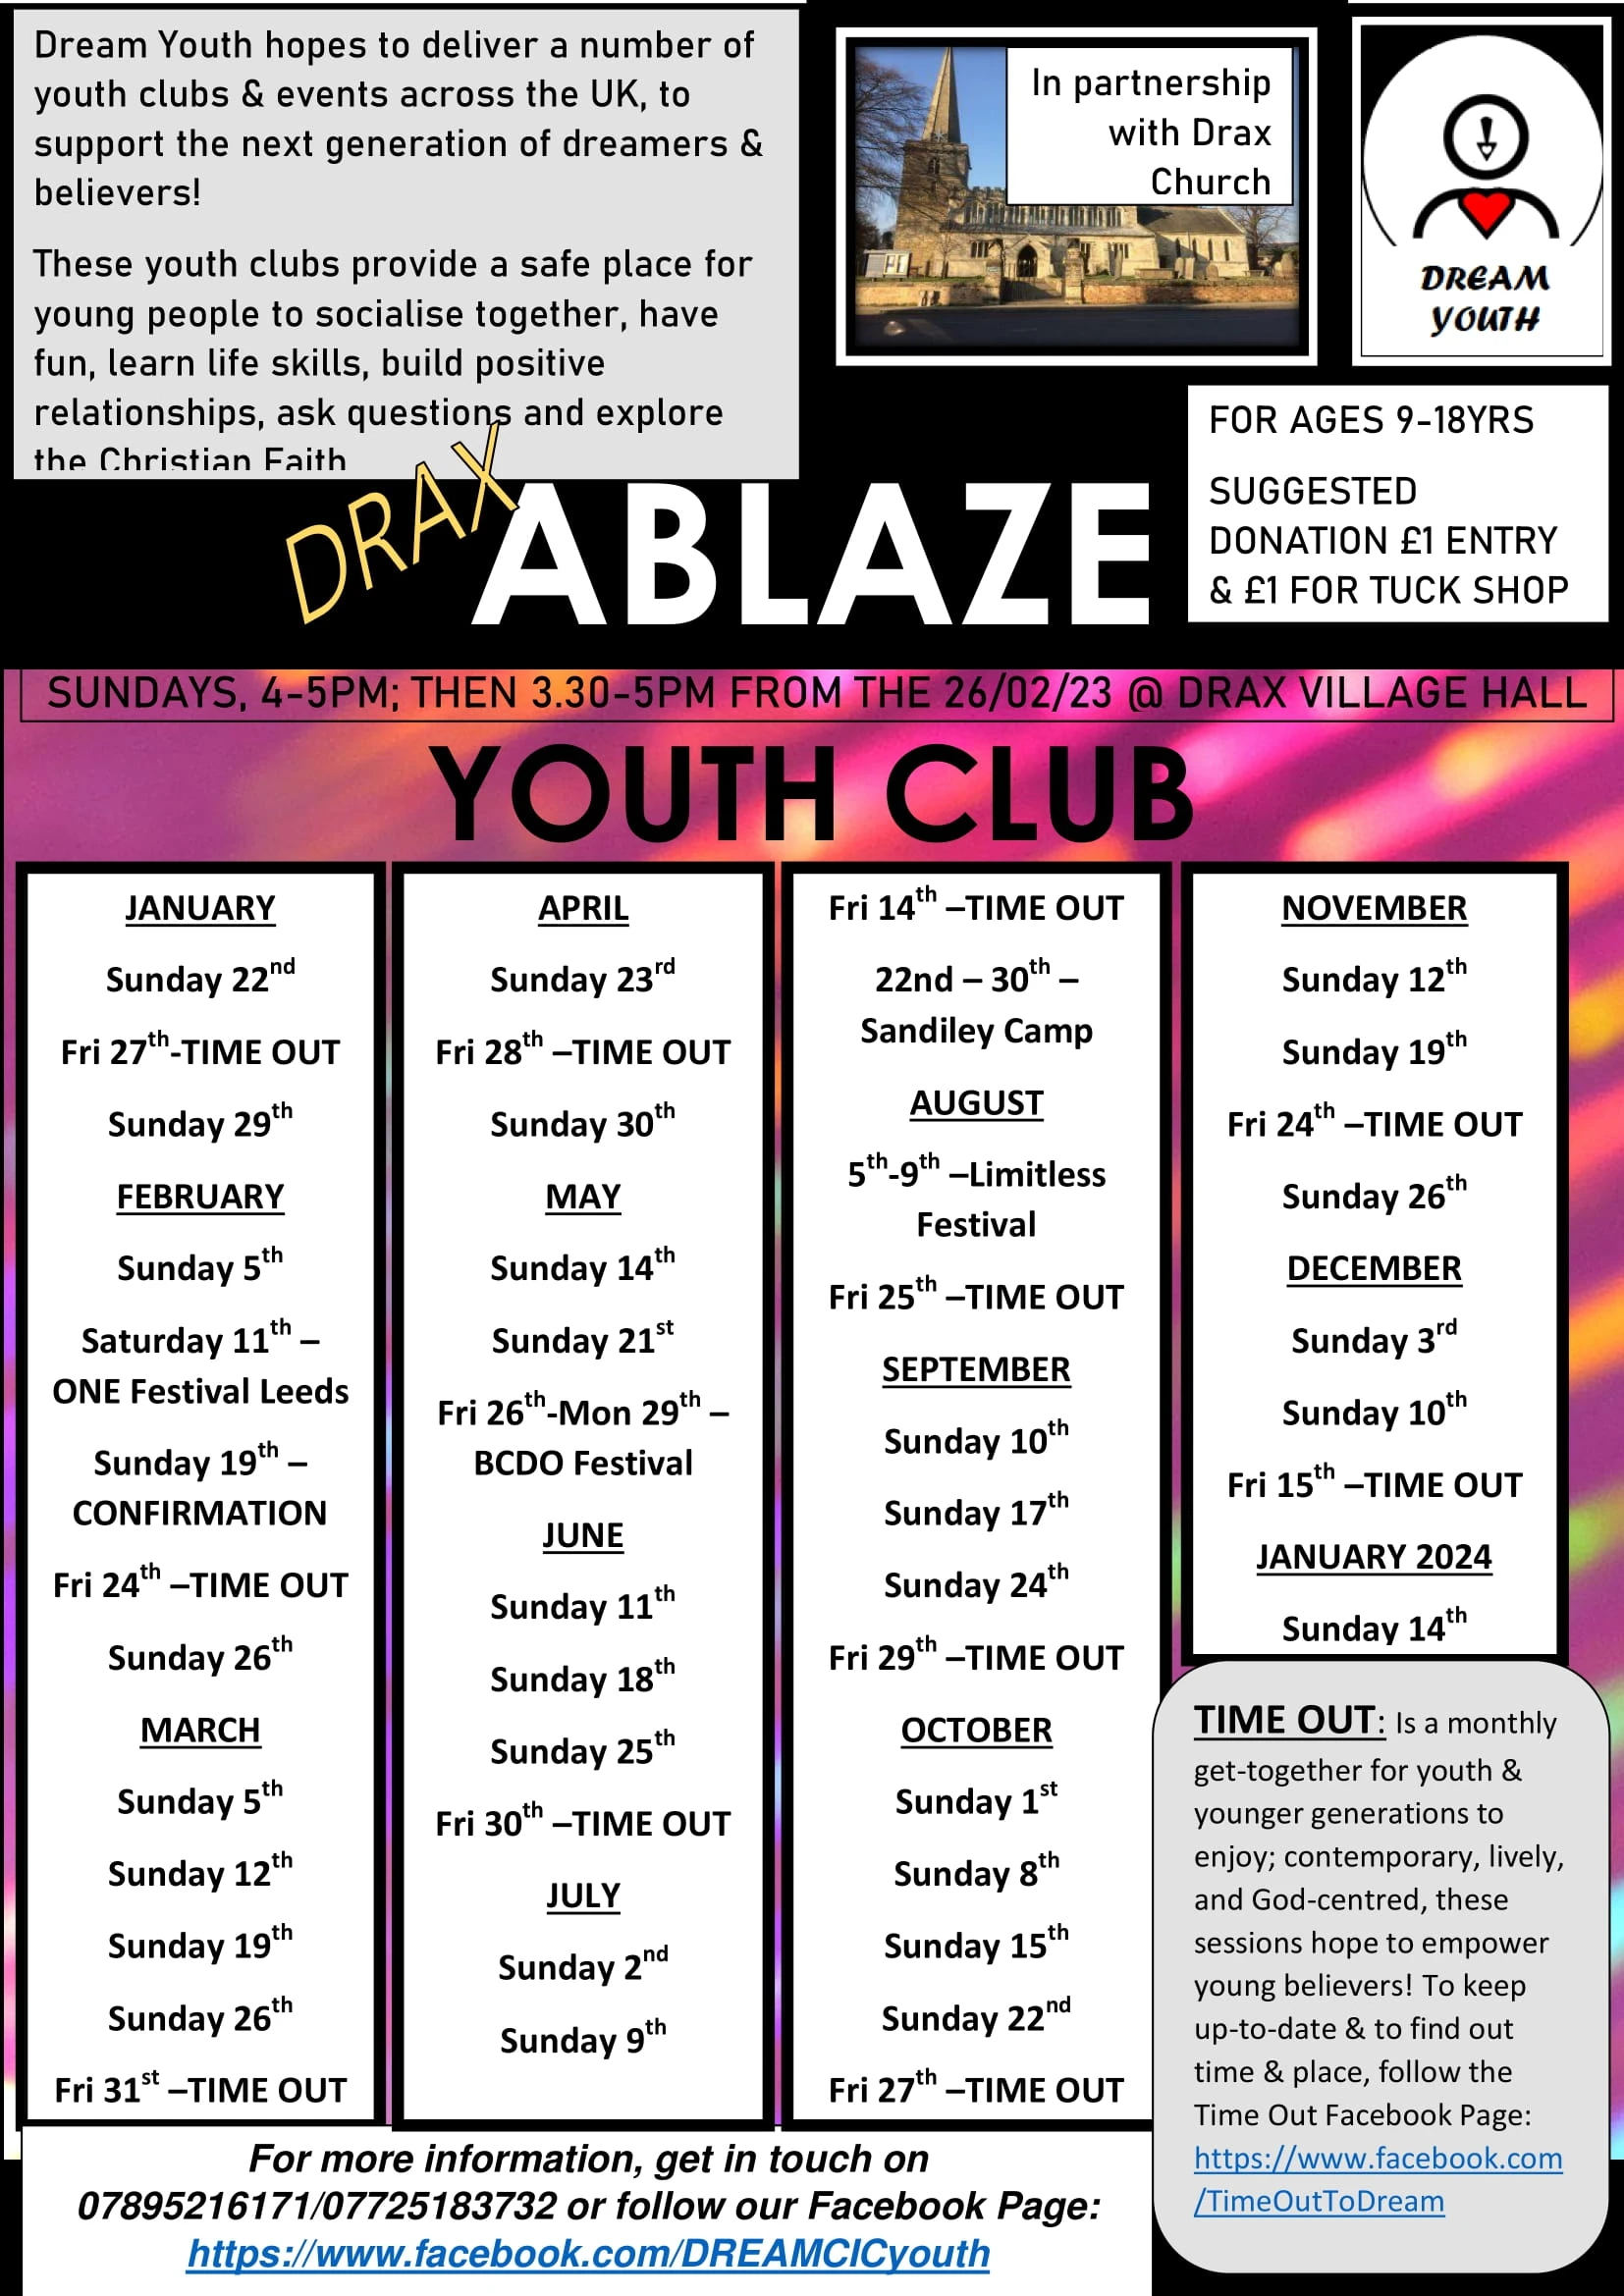 480-ablaze-youth-club-2023-dates-1-16740792216745.jpg